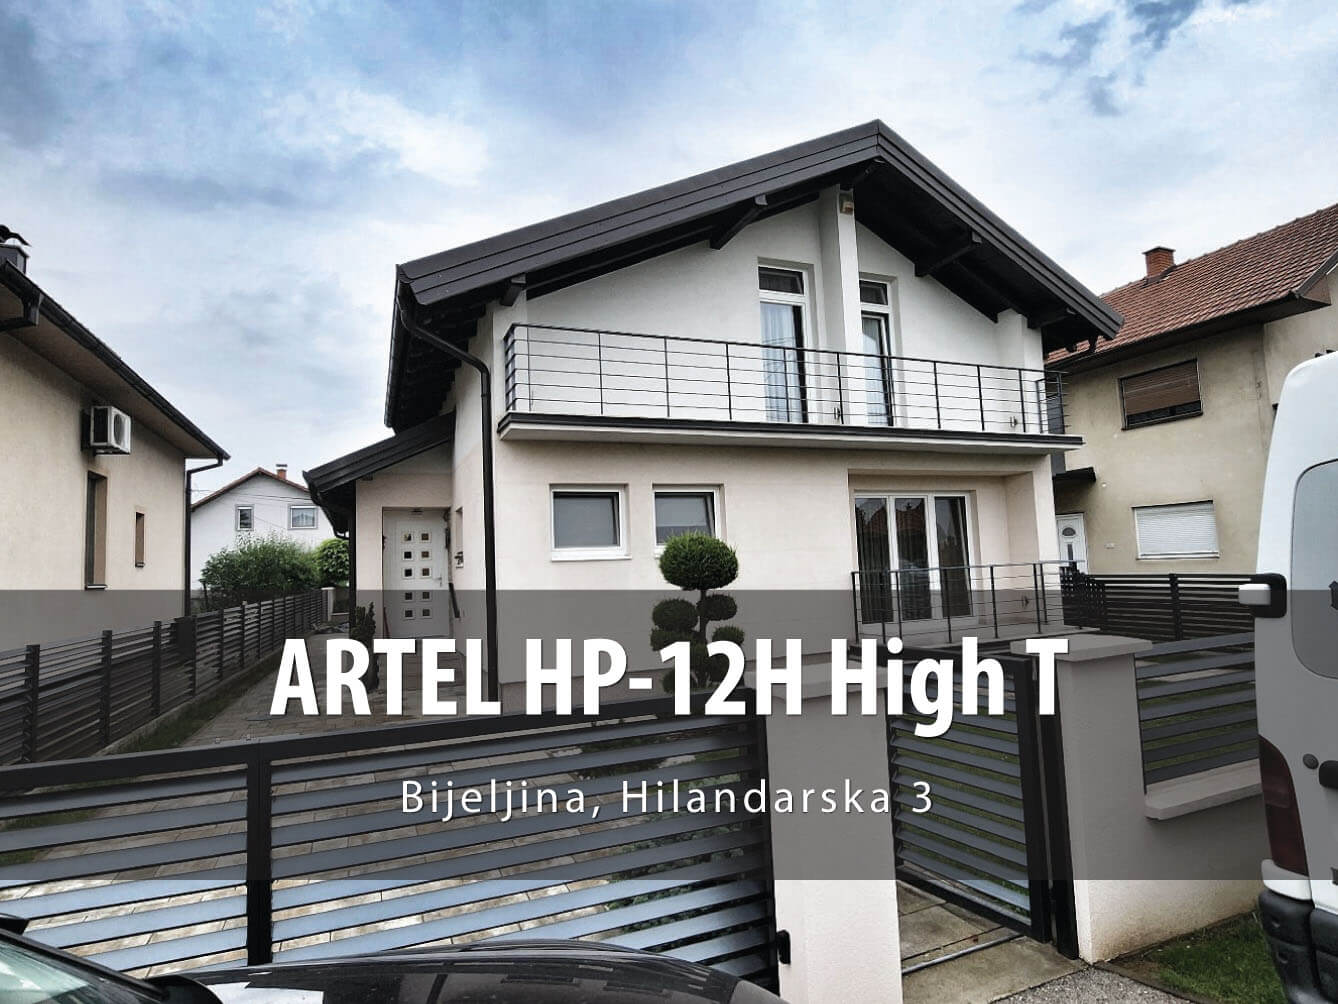 ARTEL HP-12H HT Bijeljina Hilandarska 3